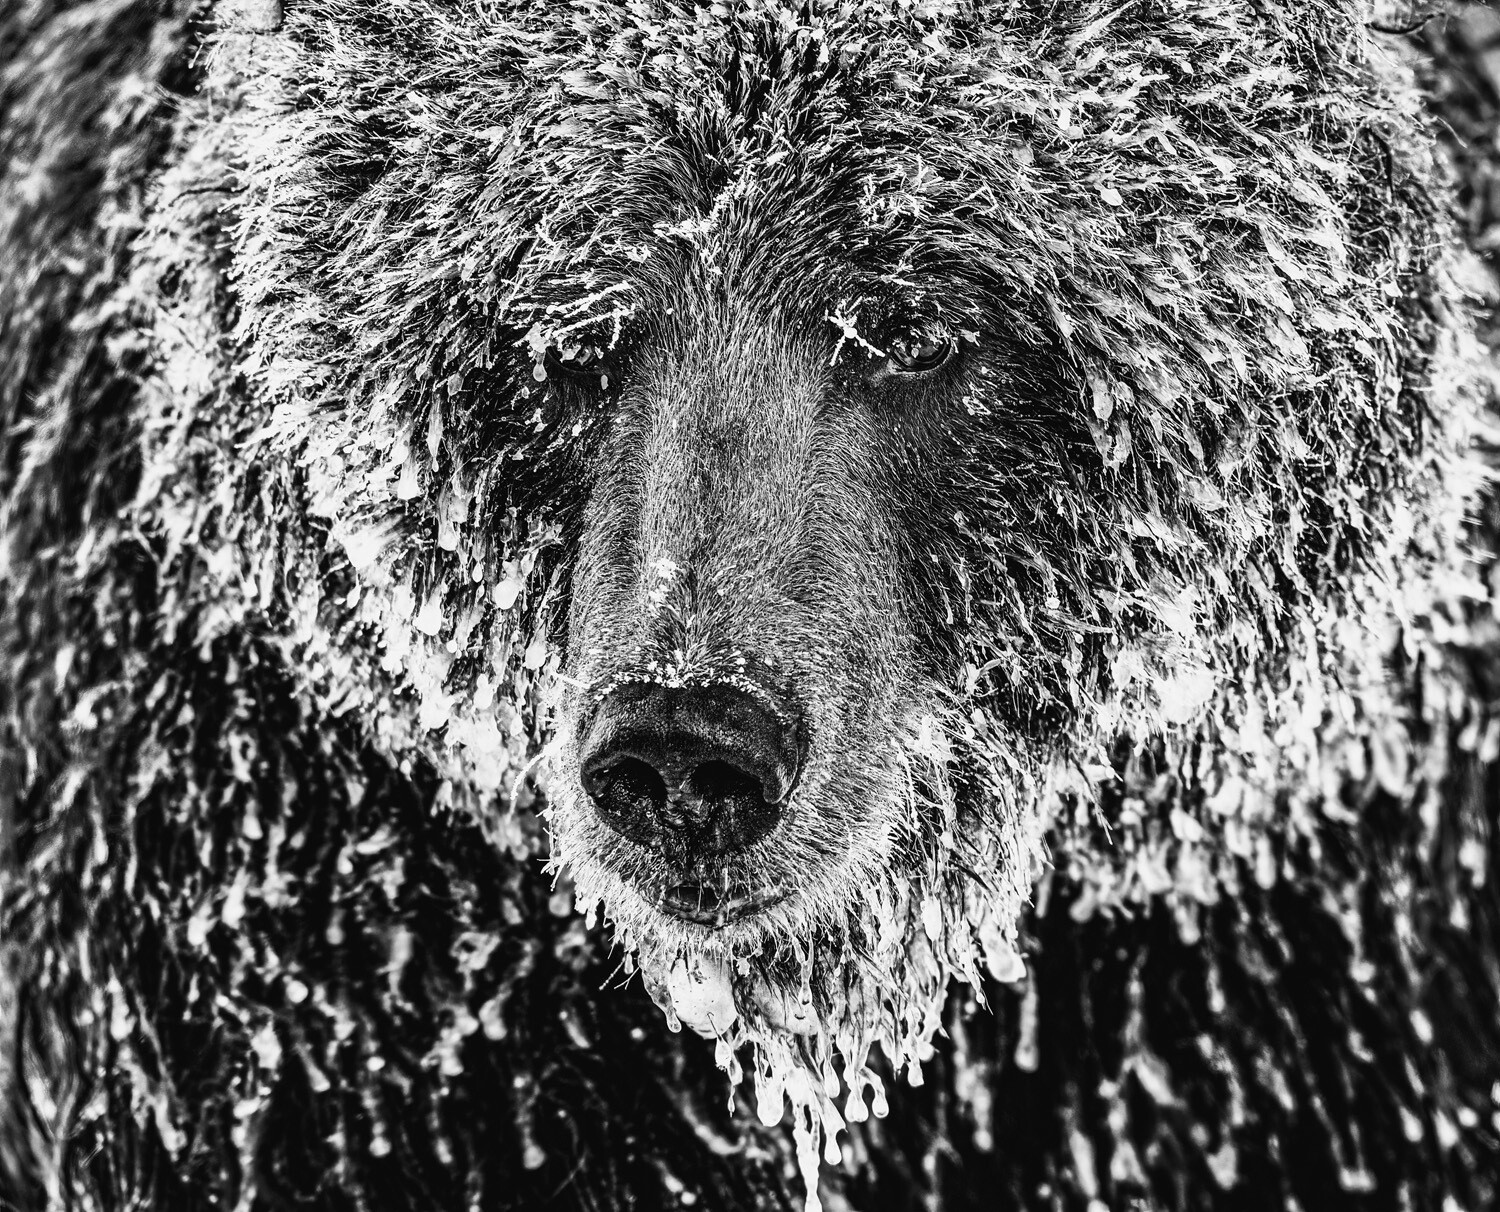 Особое упоминание в категории Best 8, одиночное изображение, 2021. Портрет медведя гризли. Фотограф Марко Димитриевич